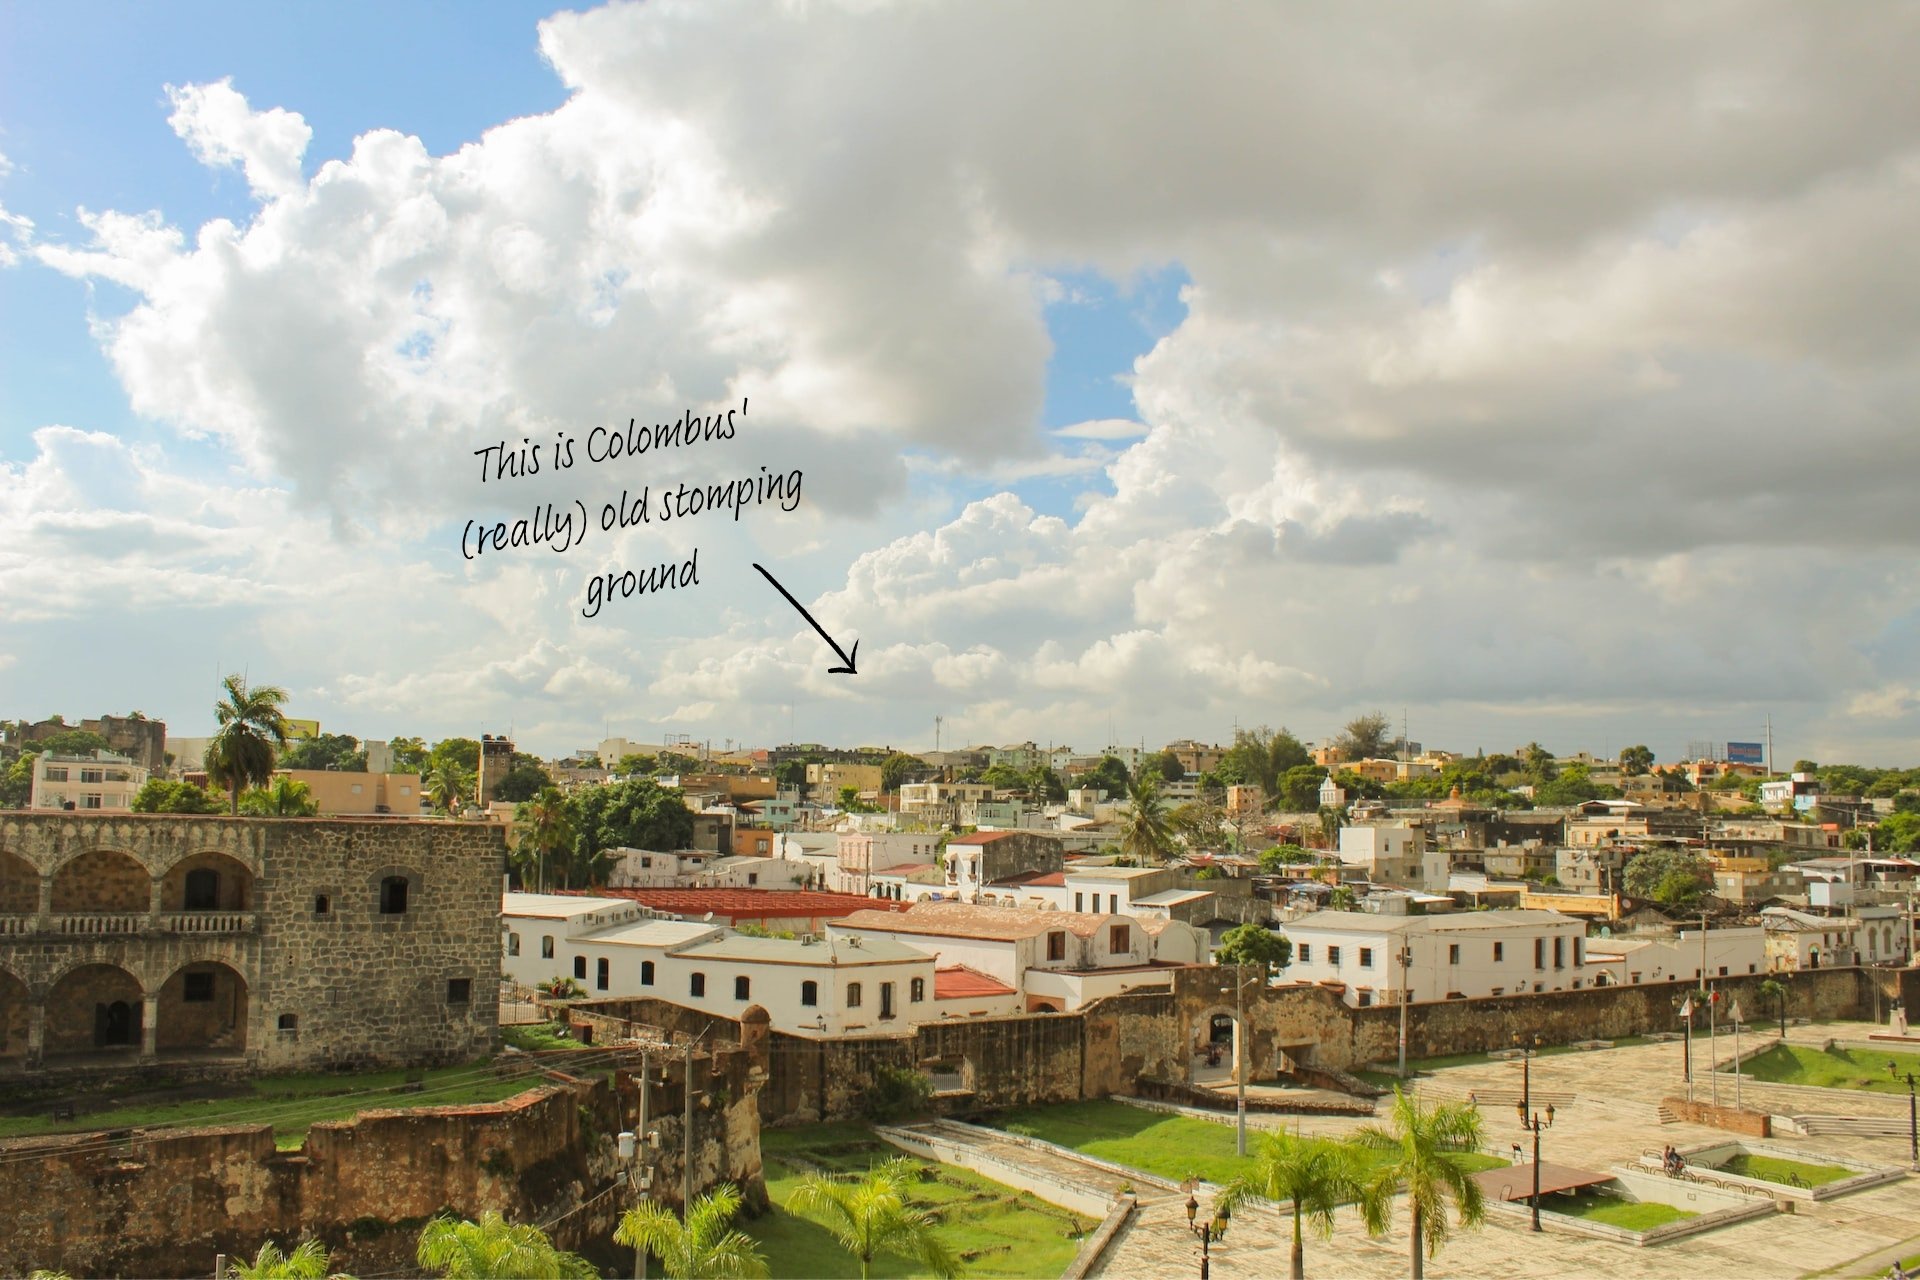 Zona Colonial, the historic centre of Santo Domingo in The Dominican Republic.